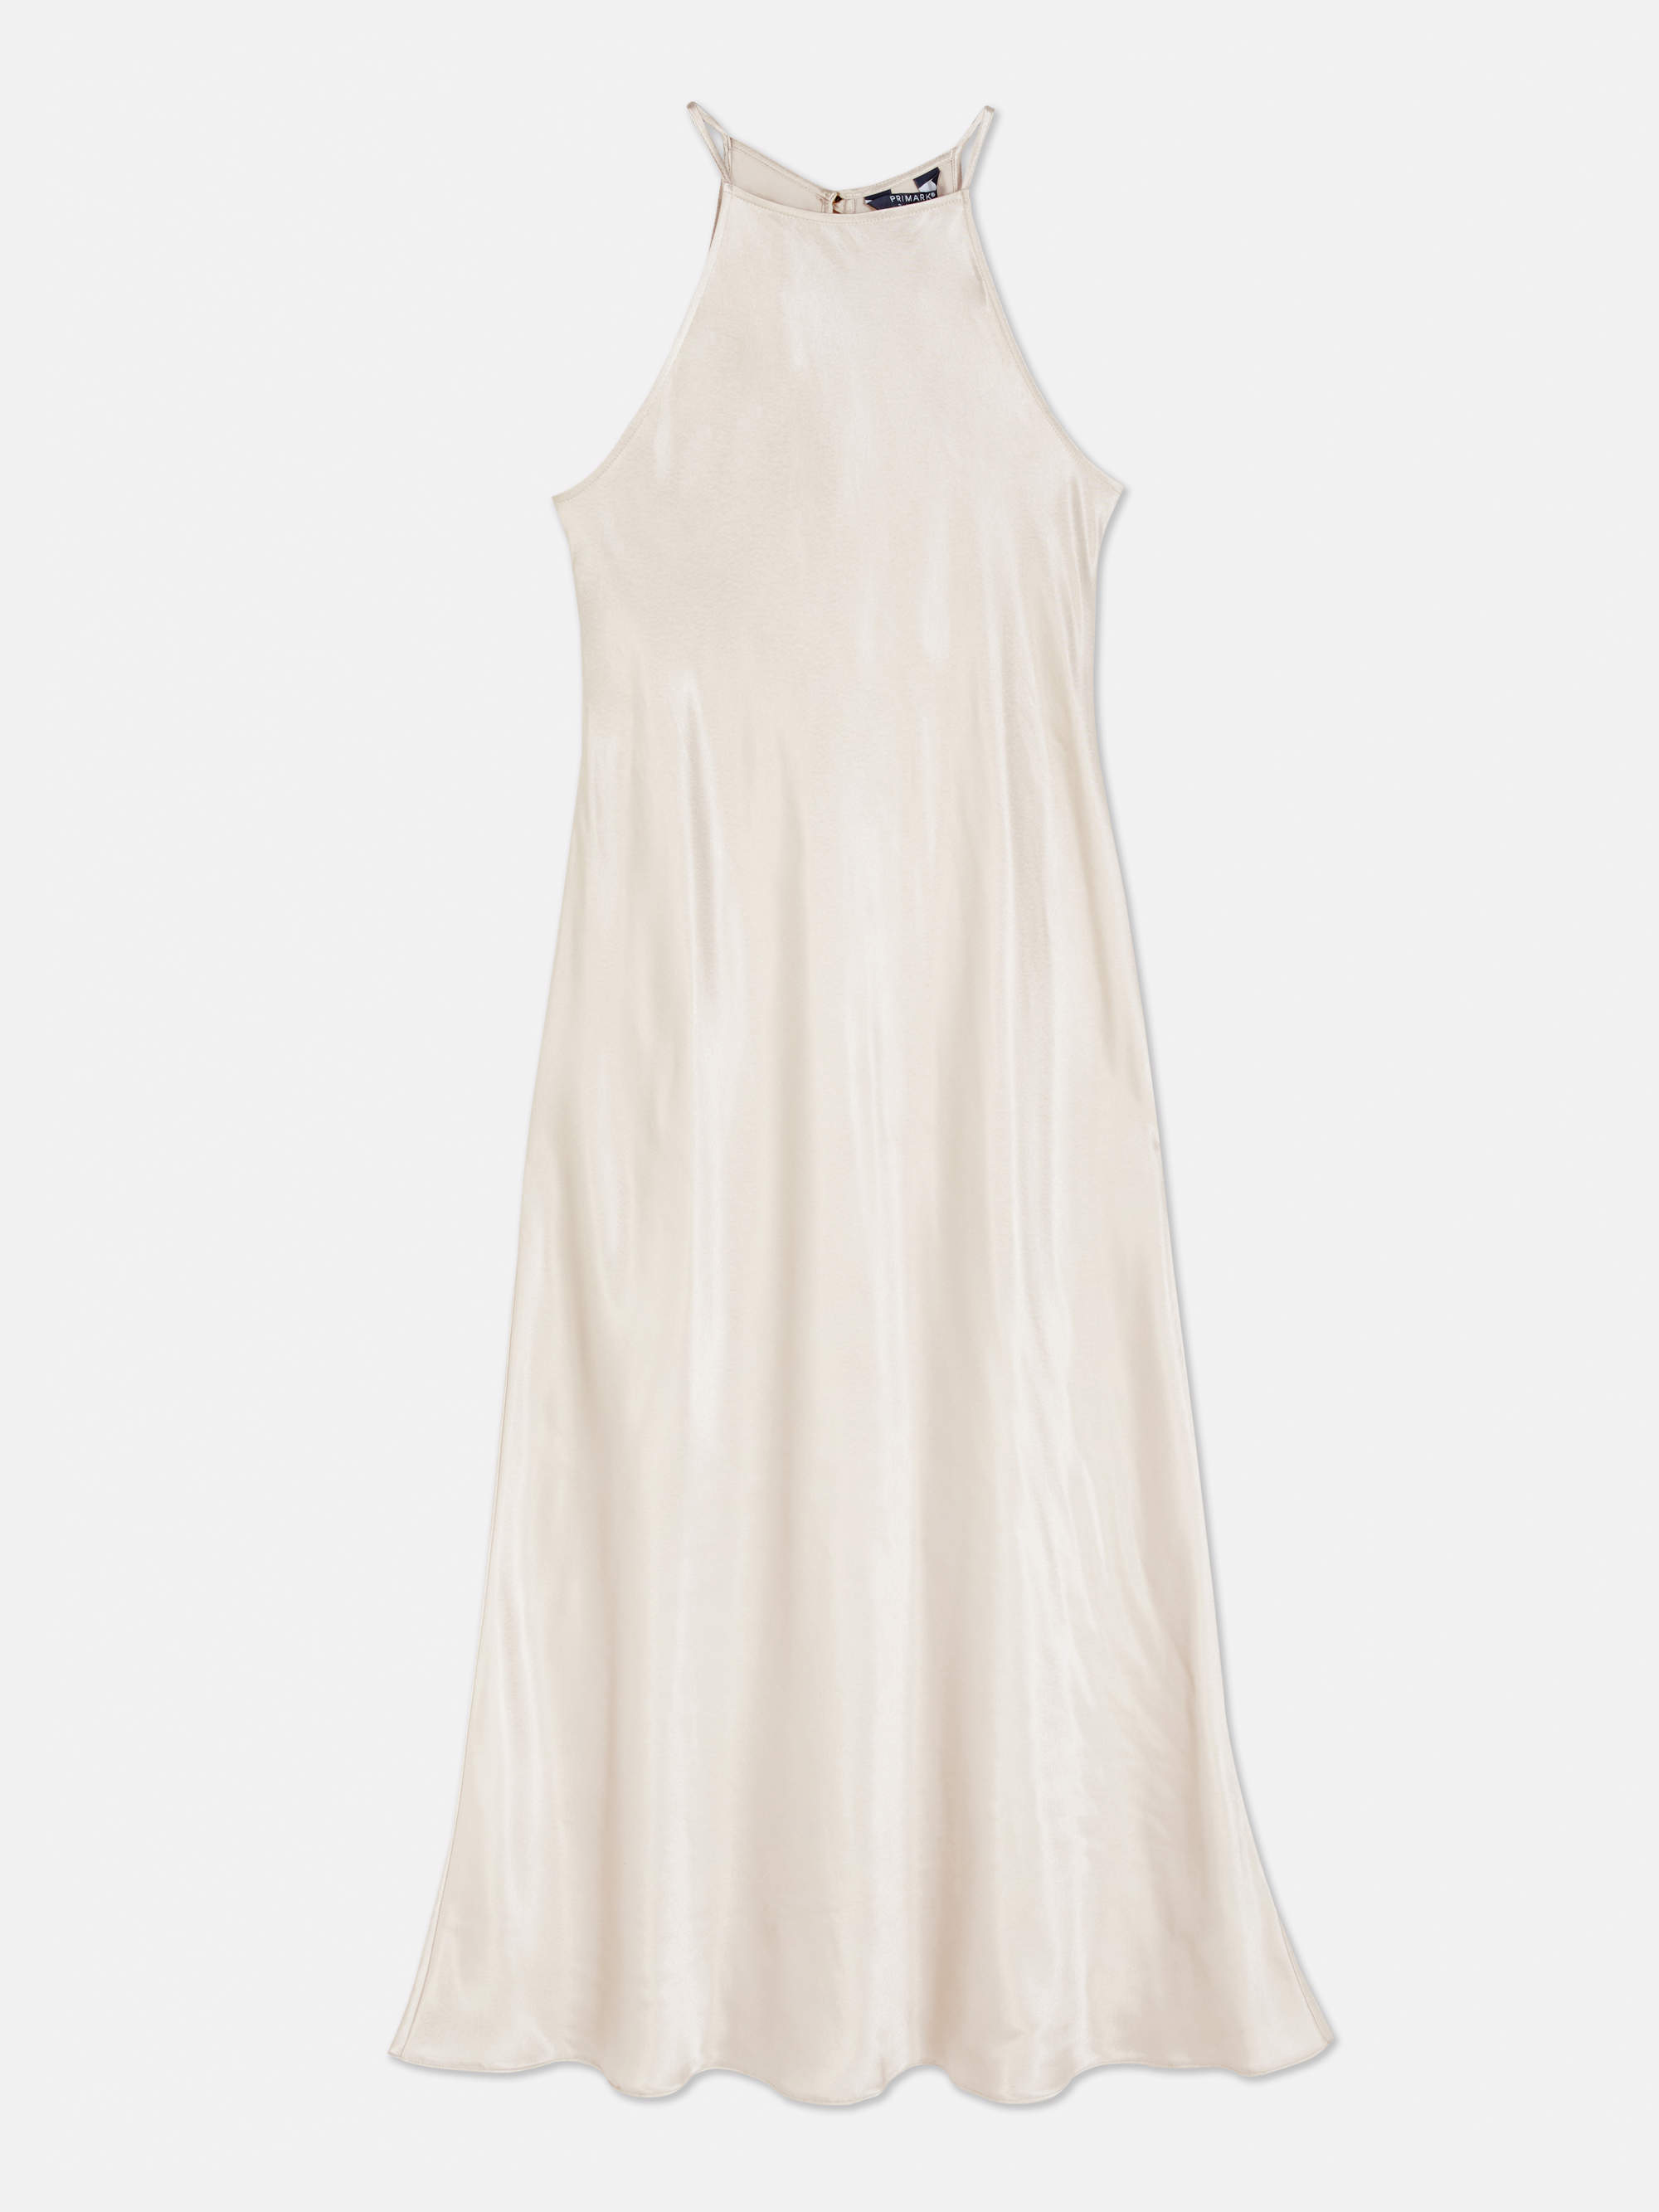 Los vestidos fresquitos y baratos para no perderte ni una tendencia esta primavera están en Primark: color perla